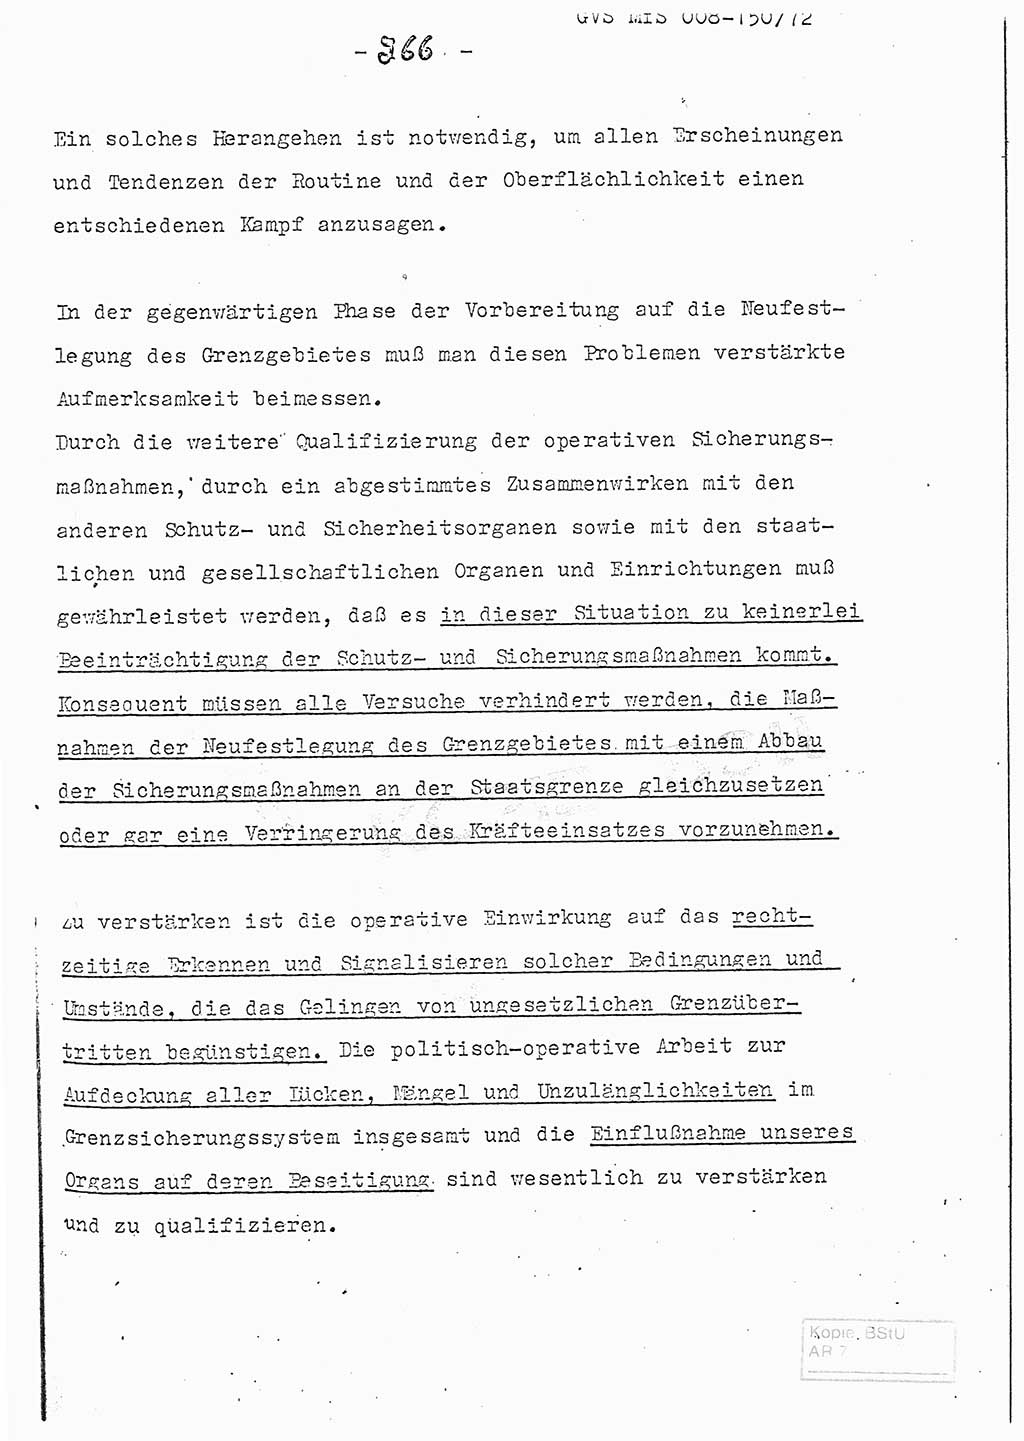 Referat (Entwurf) des Genossen Minister (Generaloberst Erich Mielke) auf der Dienstkonferenz 1972, Ministerium für Staatssicherheit (MfS) [Deutsche Demokratische Republik (DDR)], Der Minister, Geheime Verschlußsache (GVS) 008-150/72, Berlin 25.2.1972, Seite 266 (Ref. Entw. DK MfS DDR Min. GVS 008-150/72 1972, S. 266)